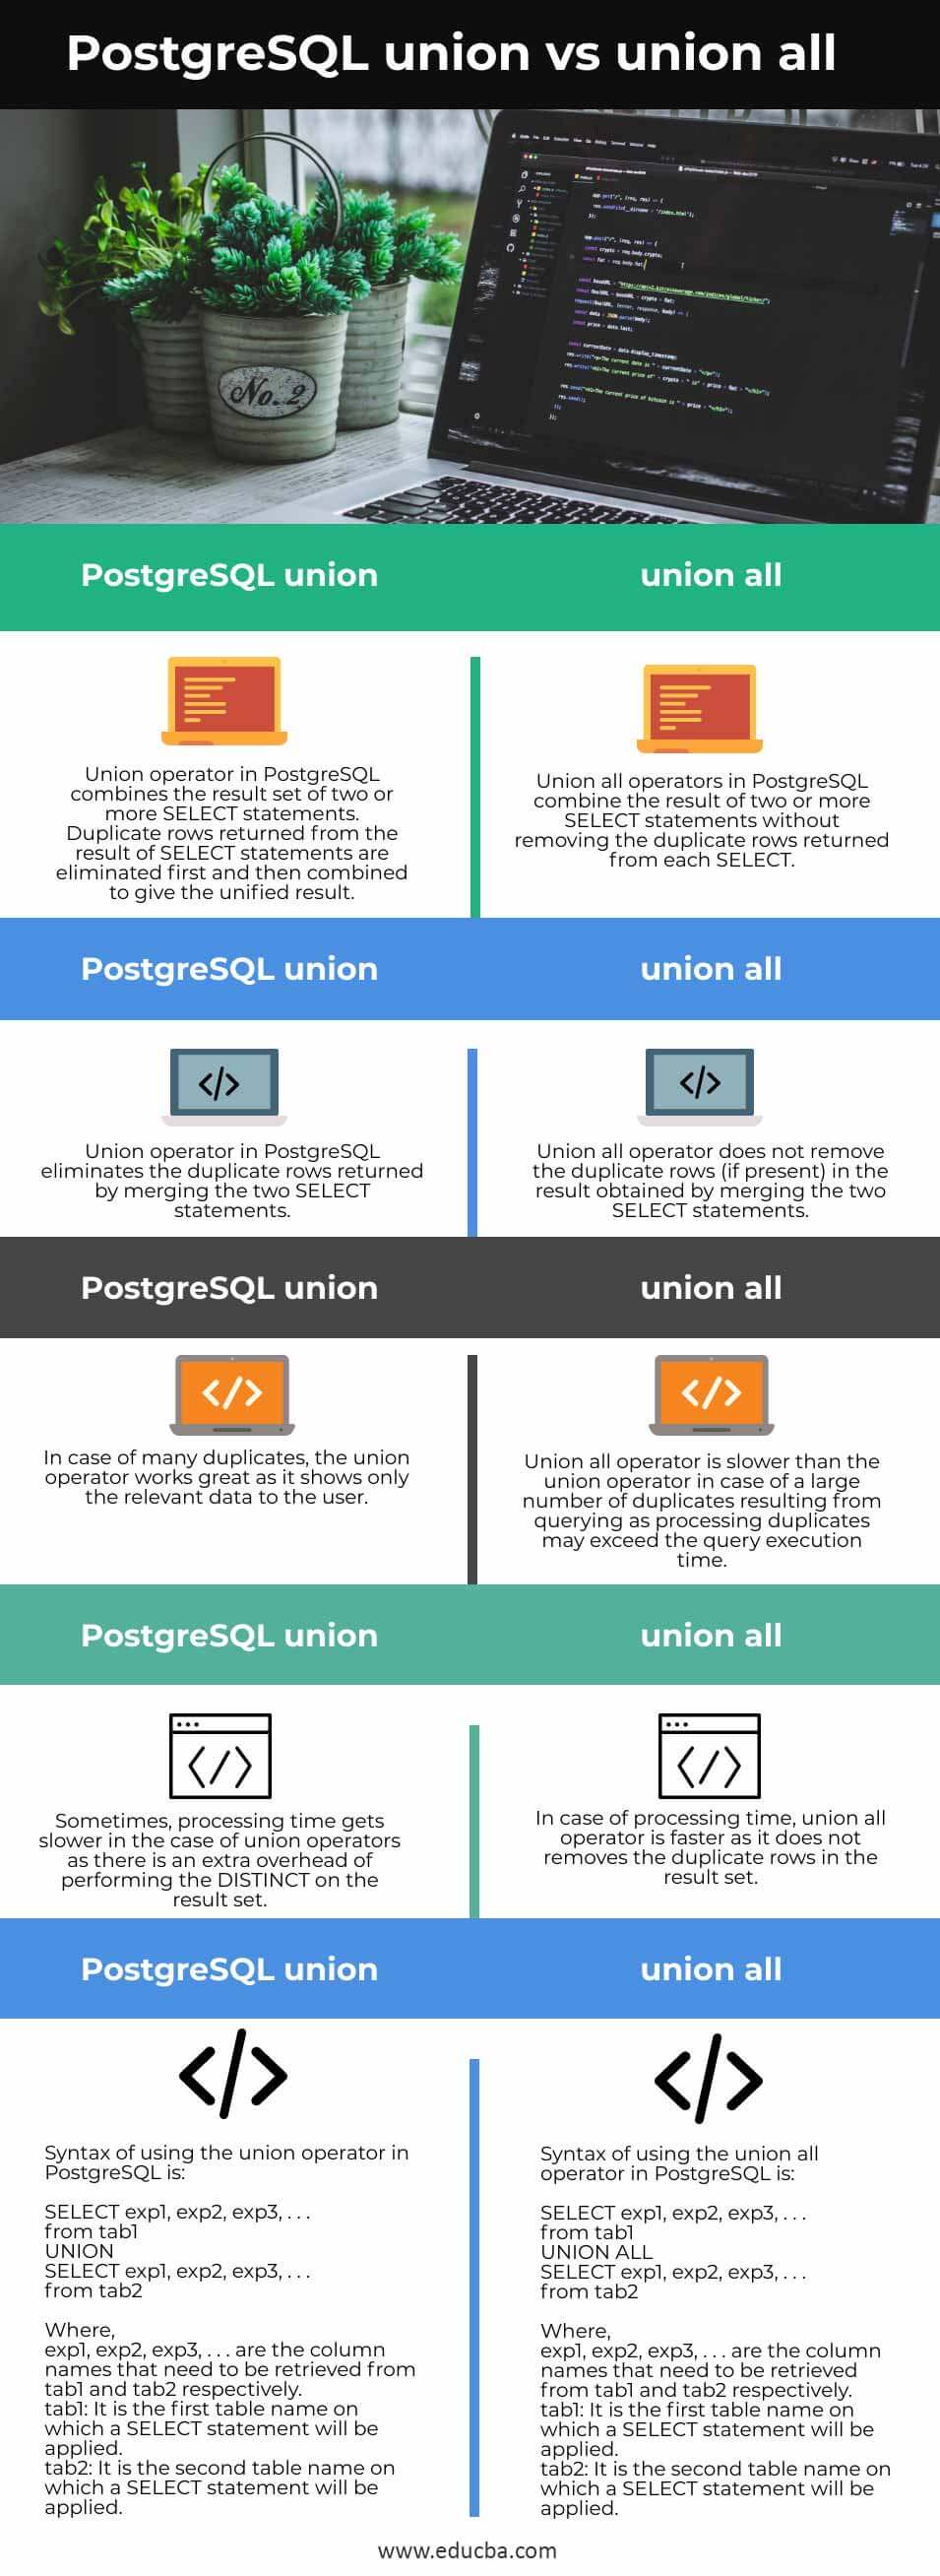 PostgreSQL-union-vs-union-all-info